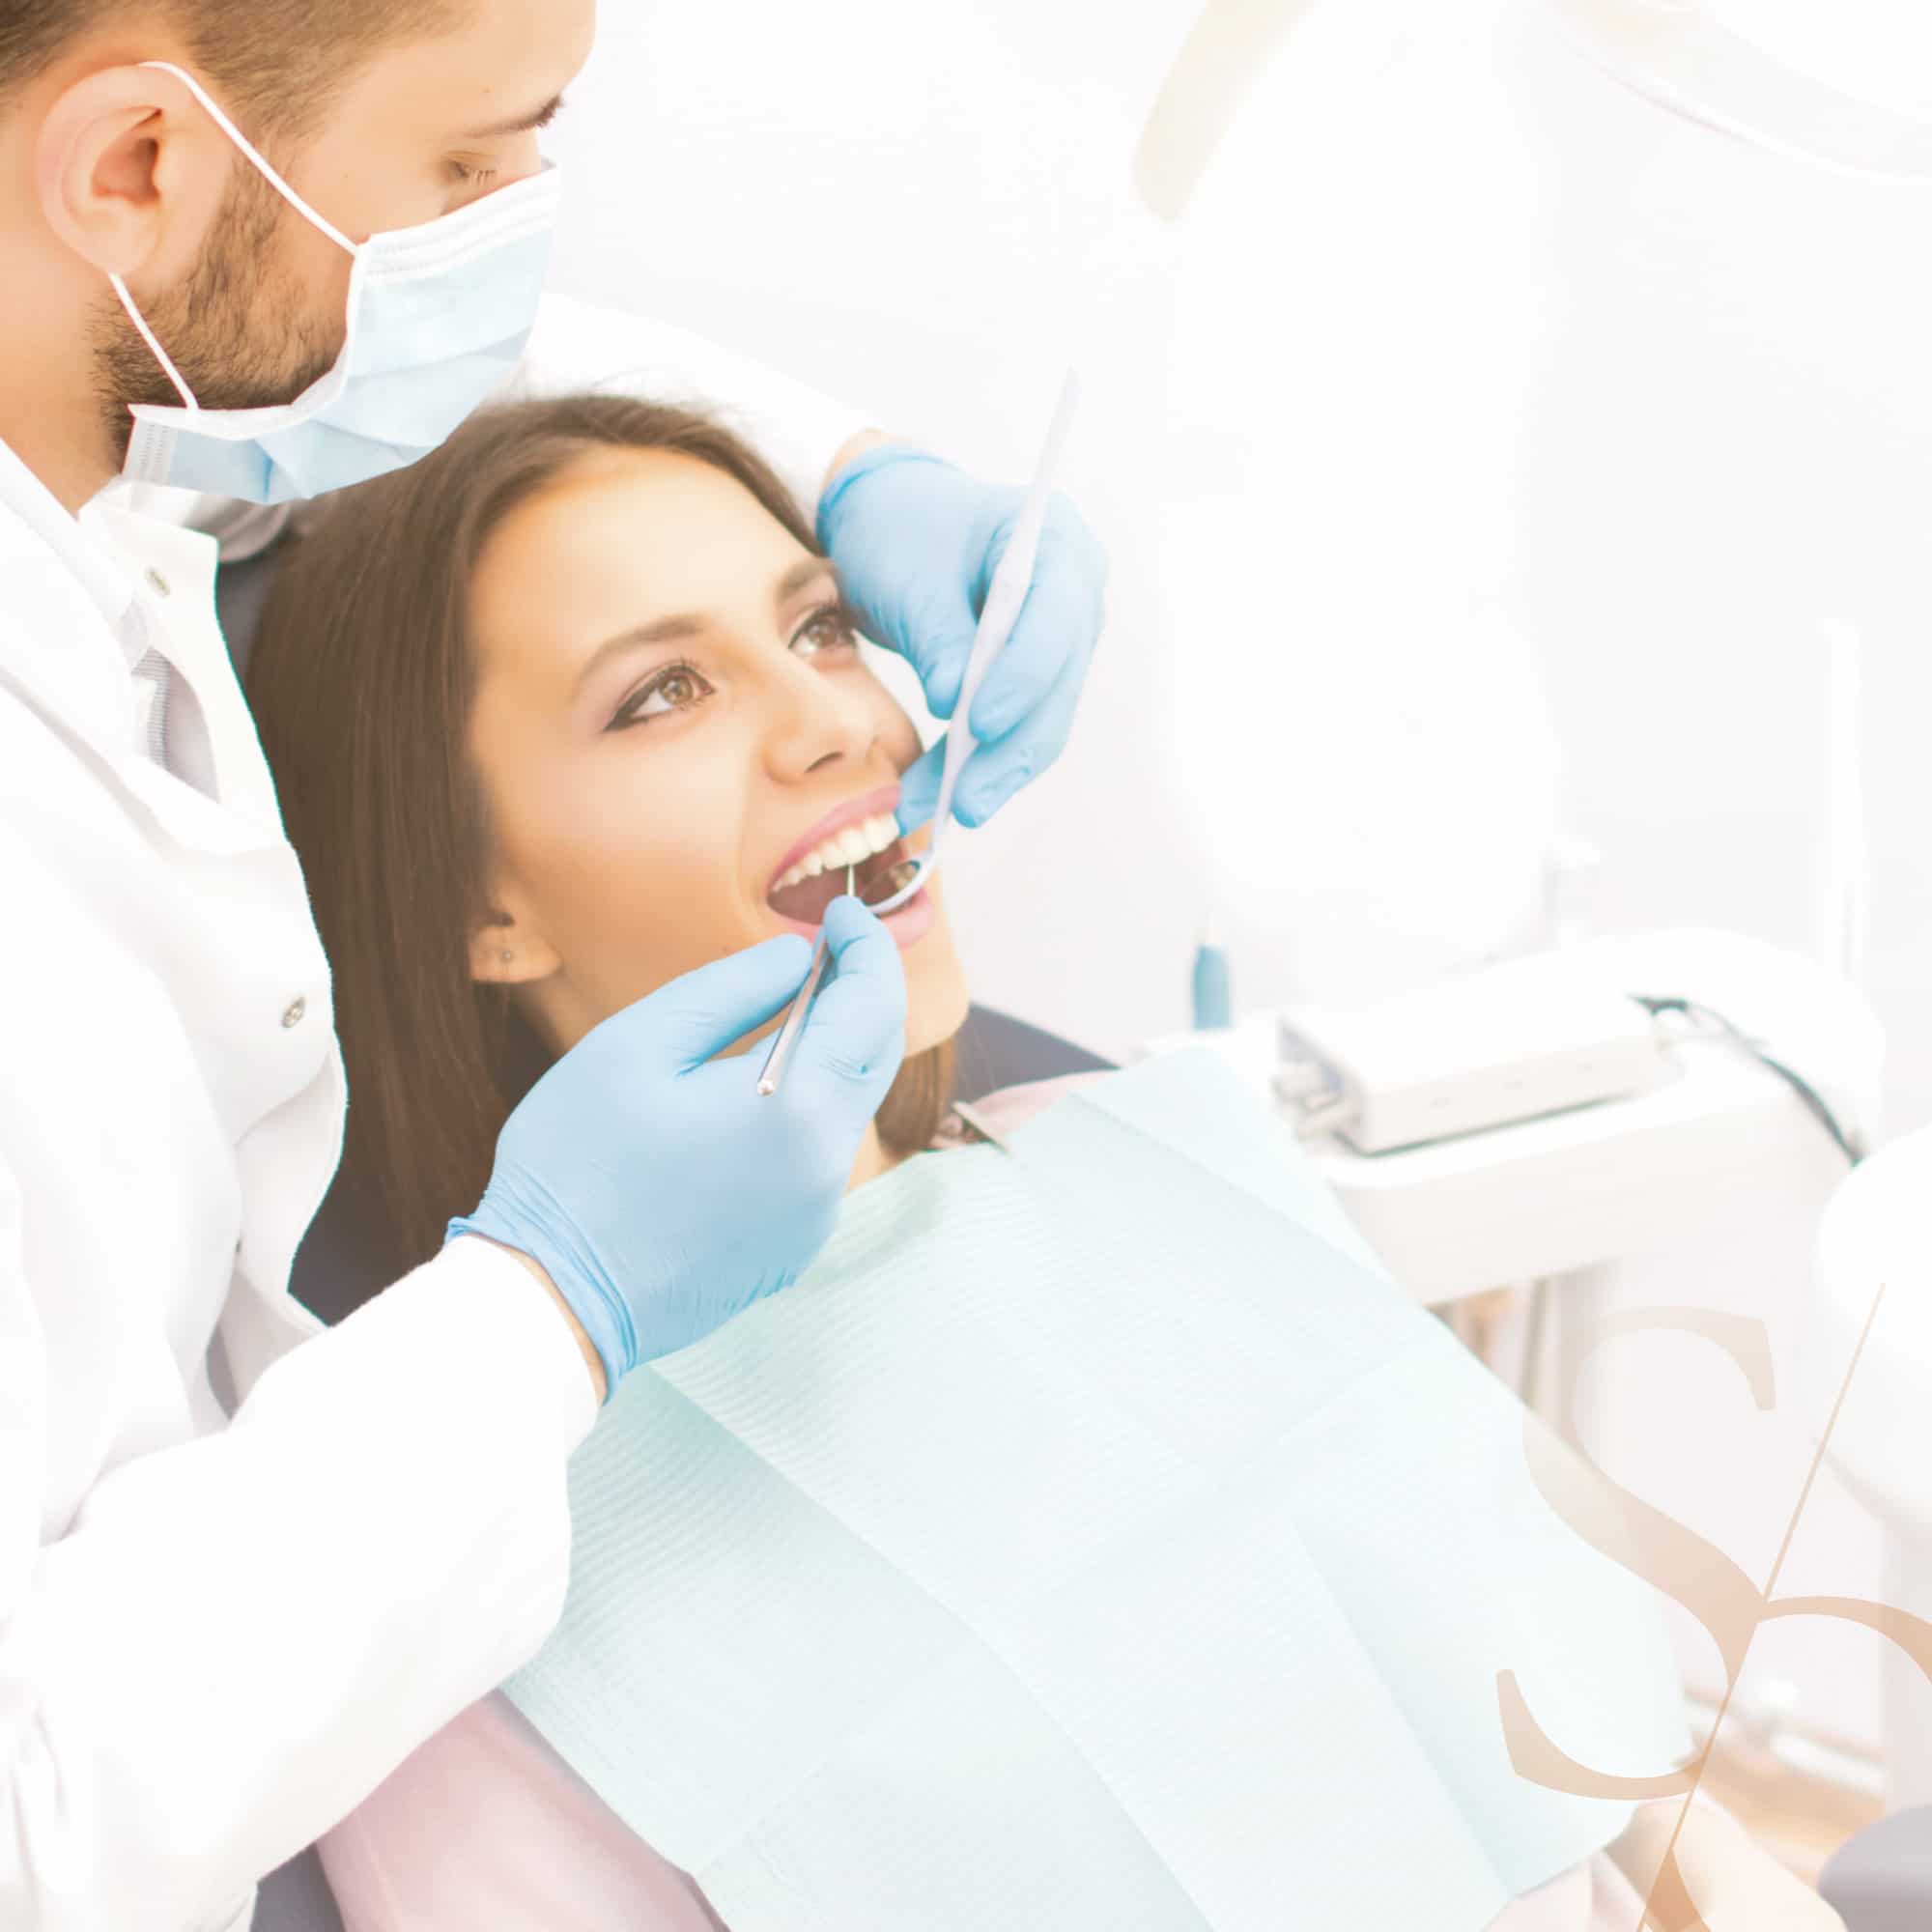 Détartrage, nécessité et résultats | Clinique dentaire Sana Oris Paris 8